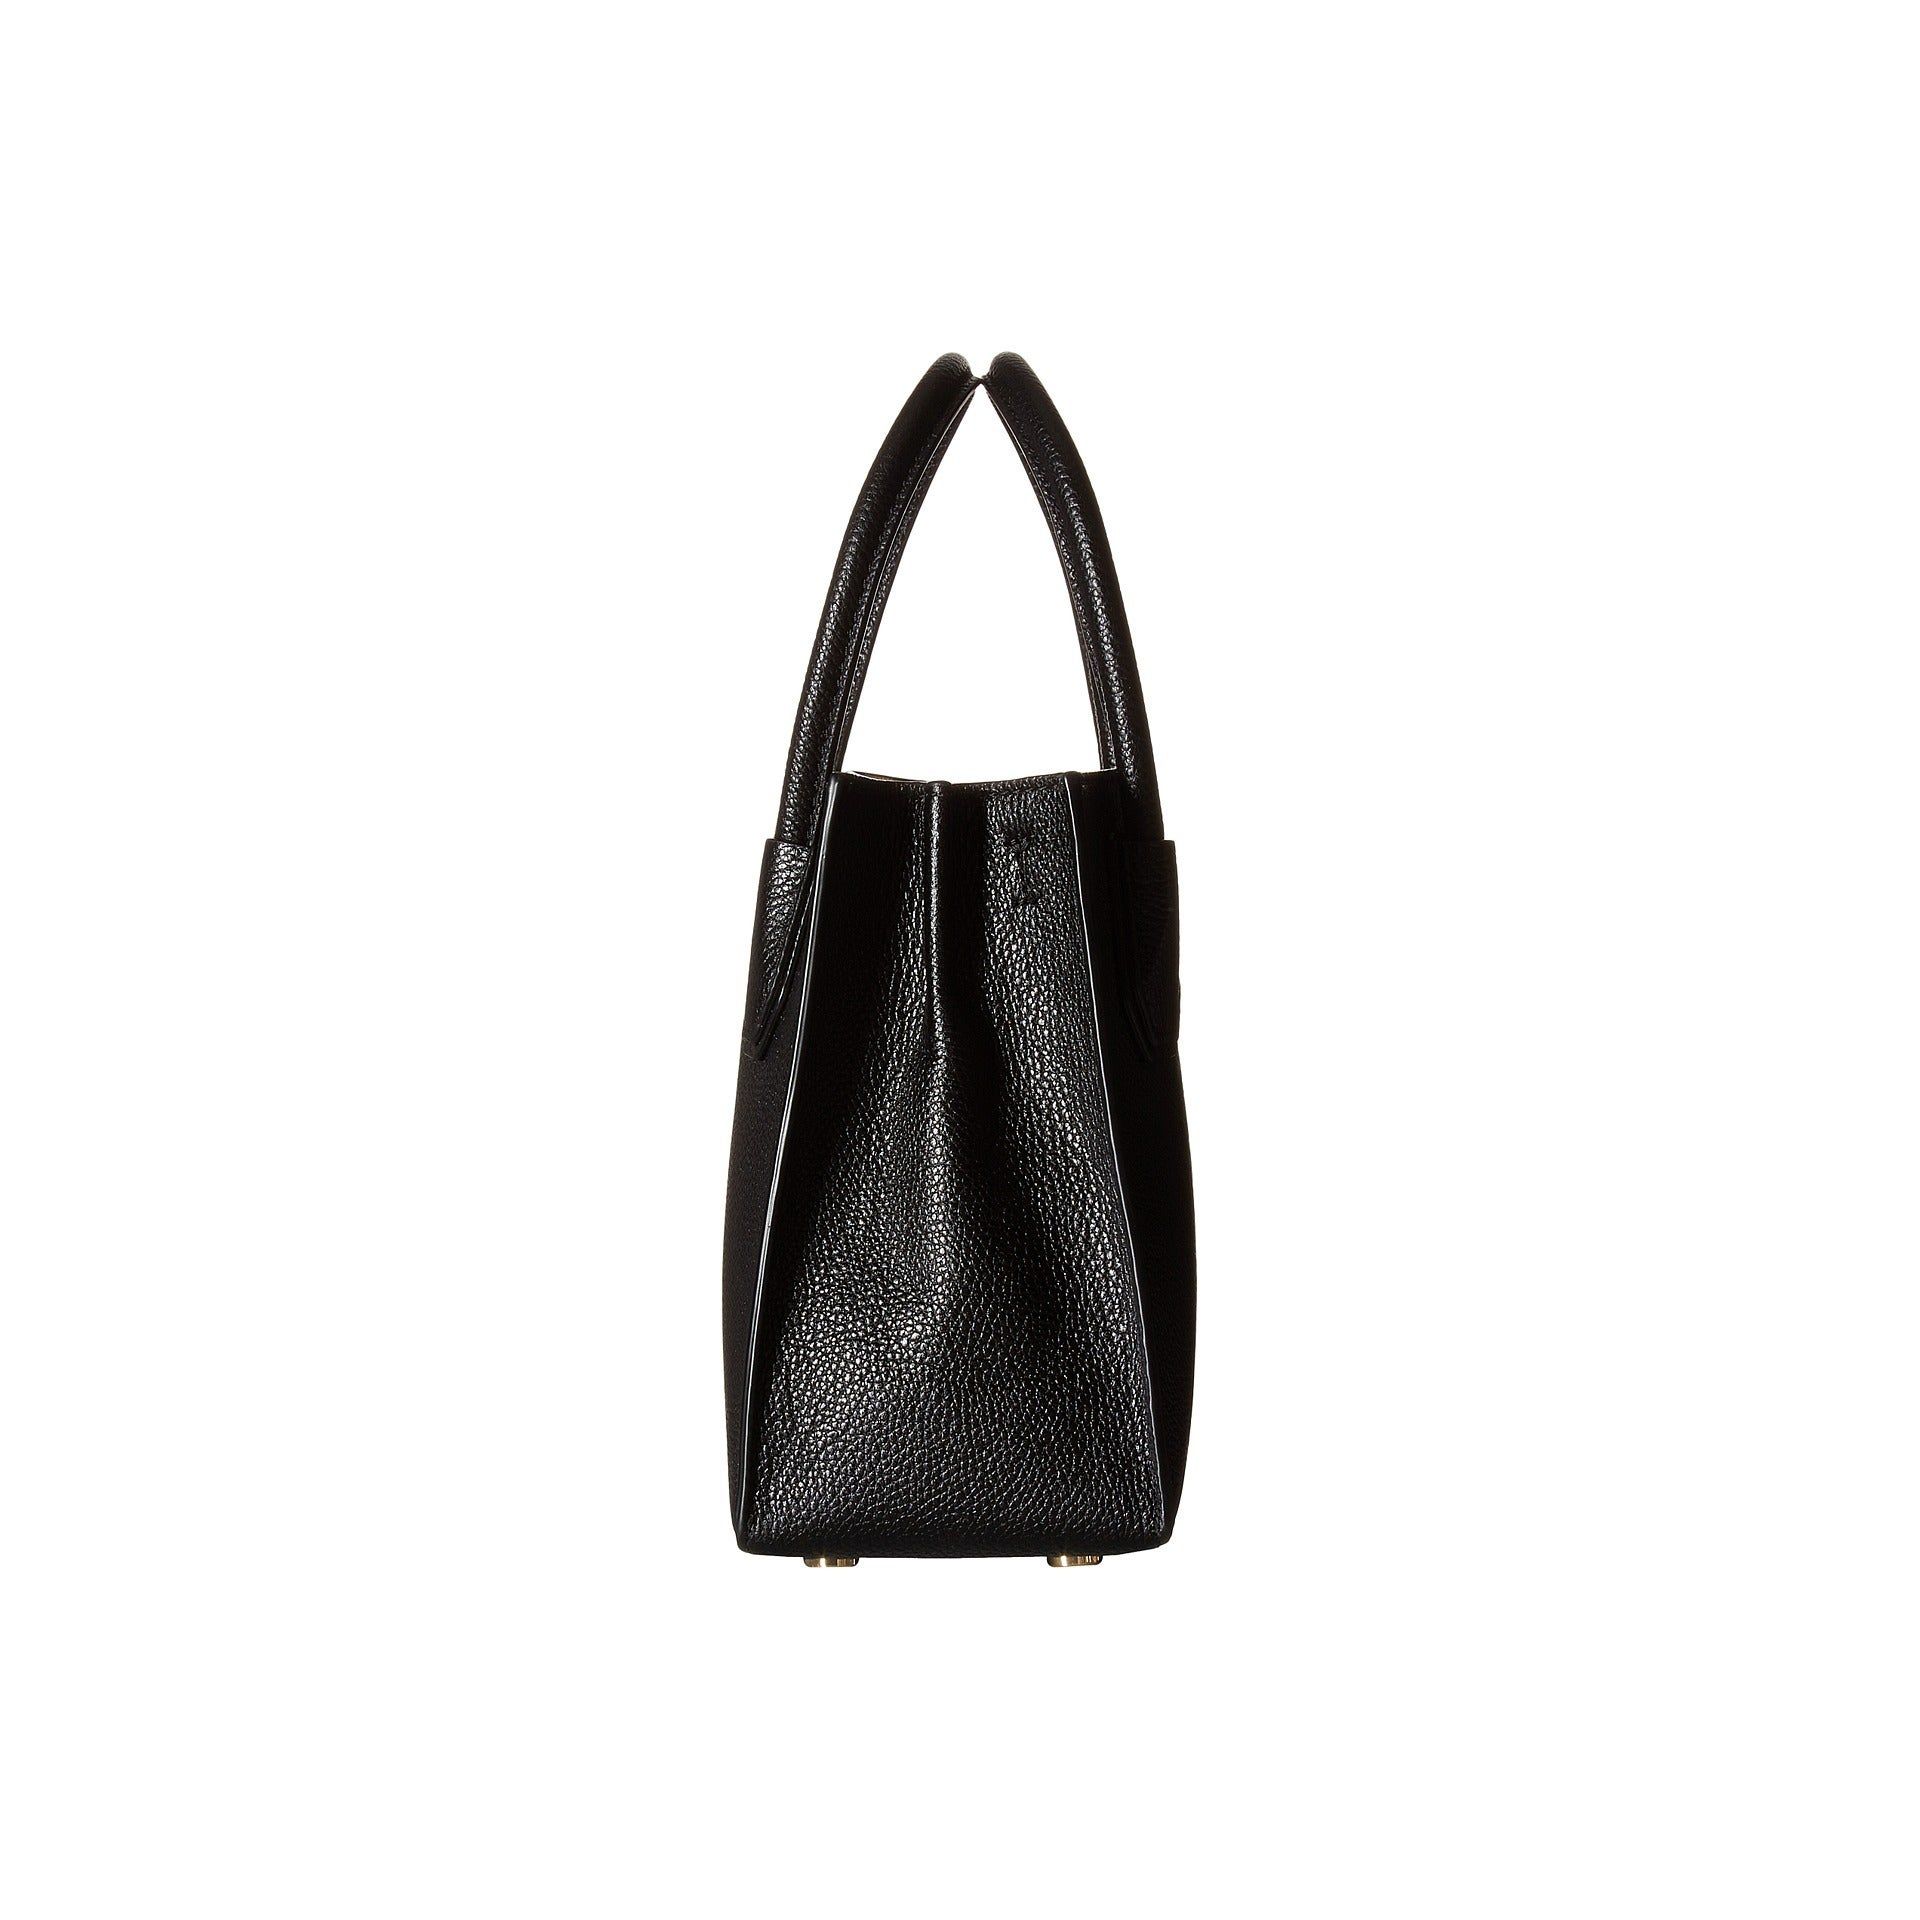 Michael Kors Handbag - Image 4 of 6